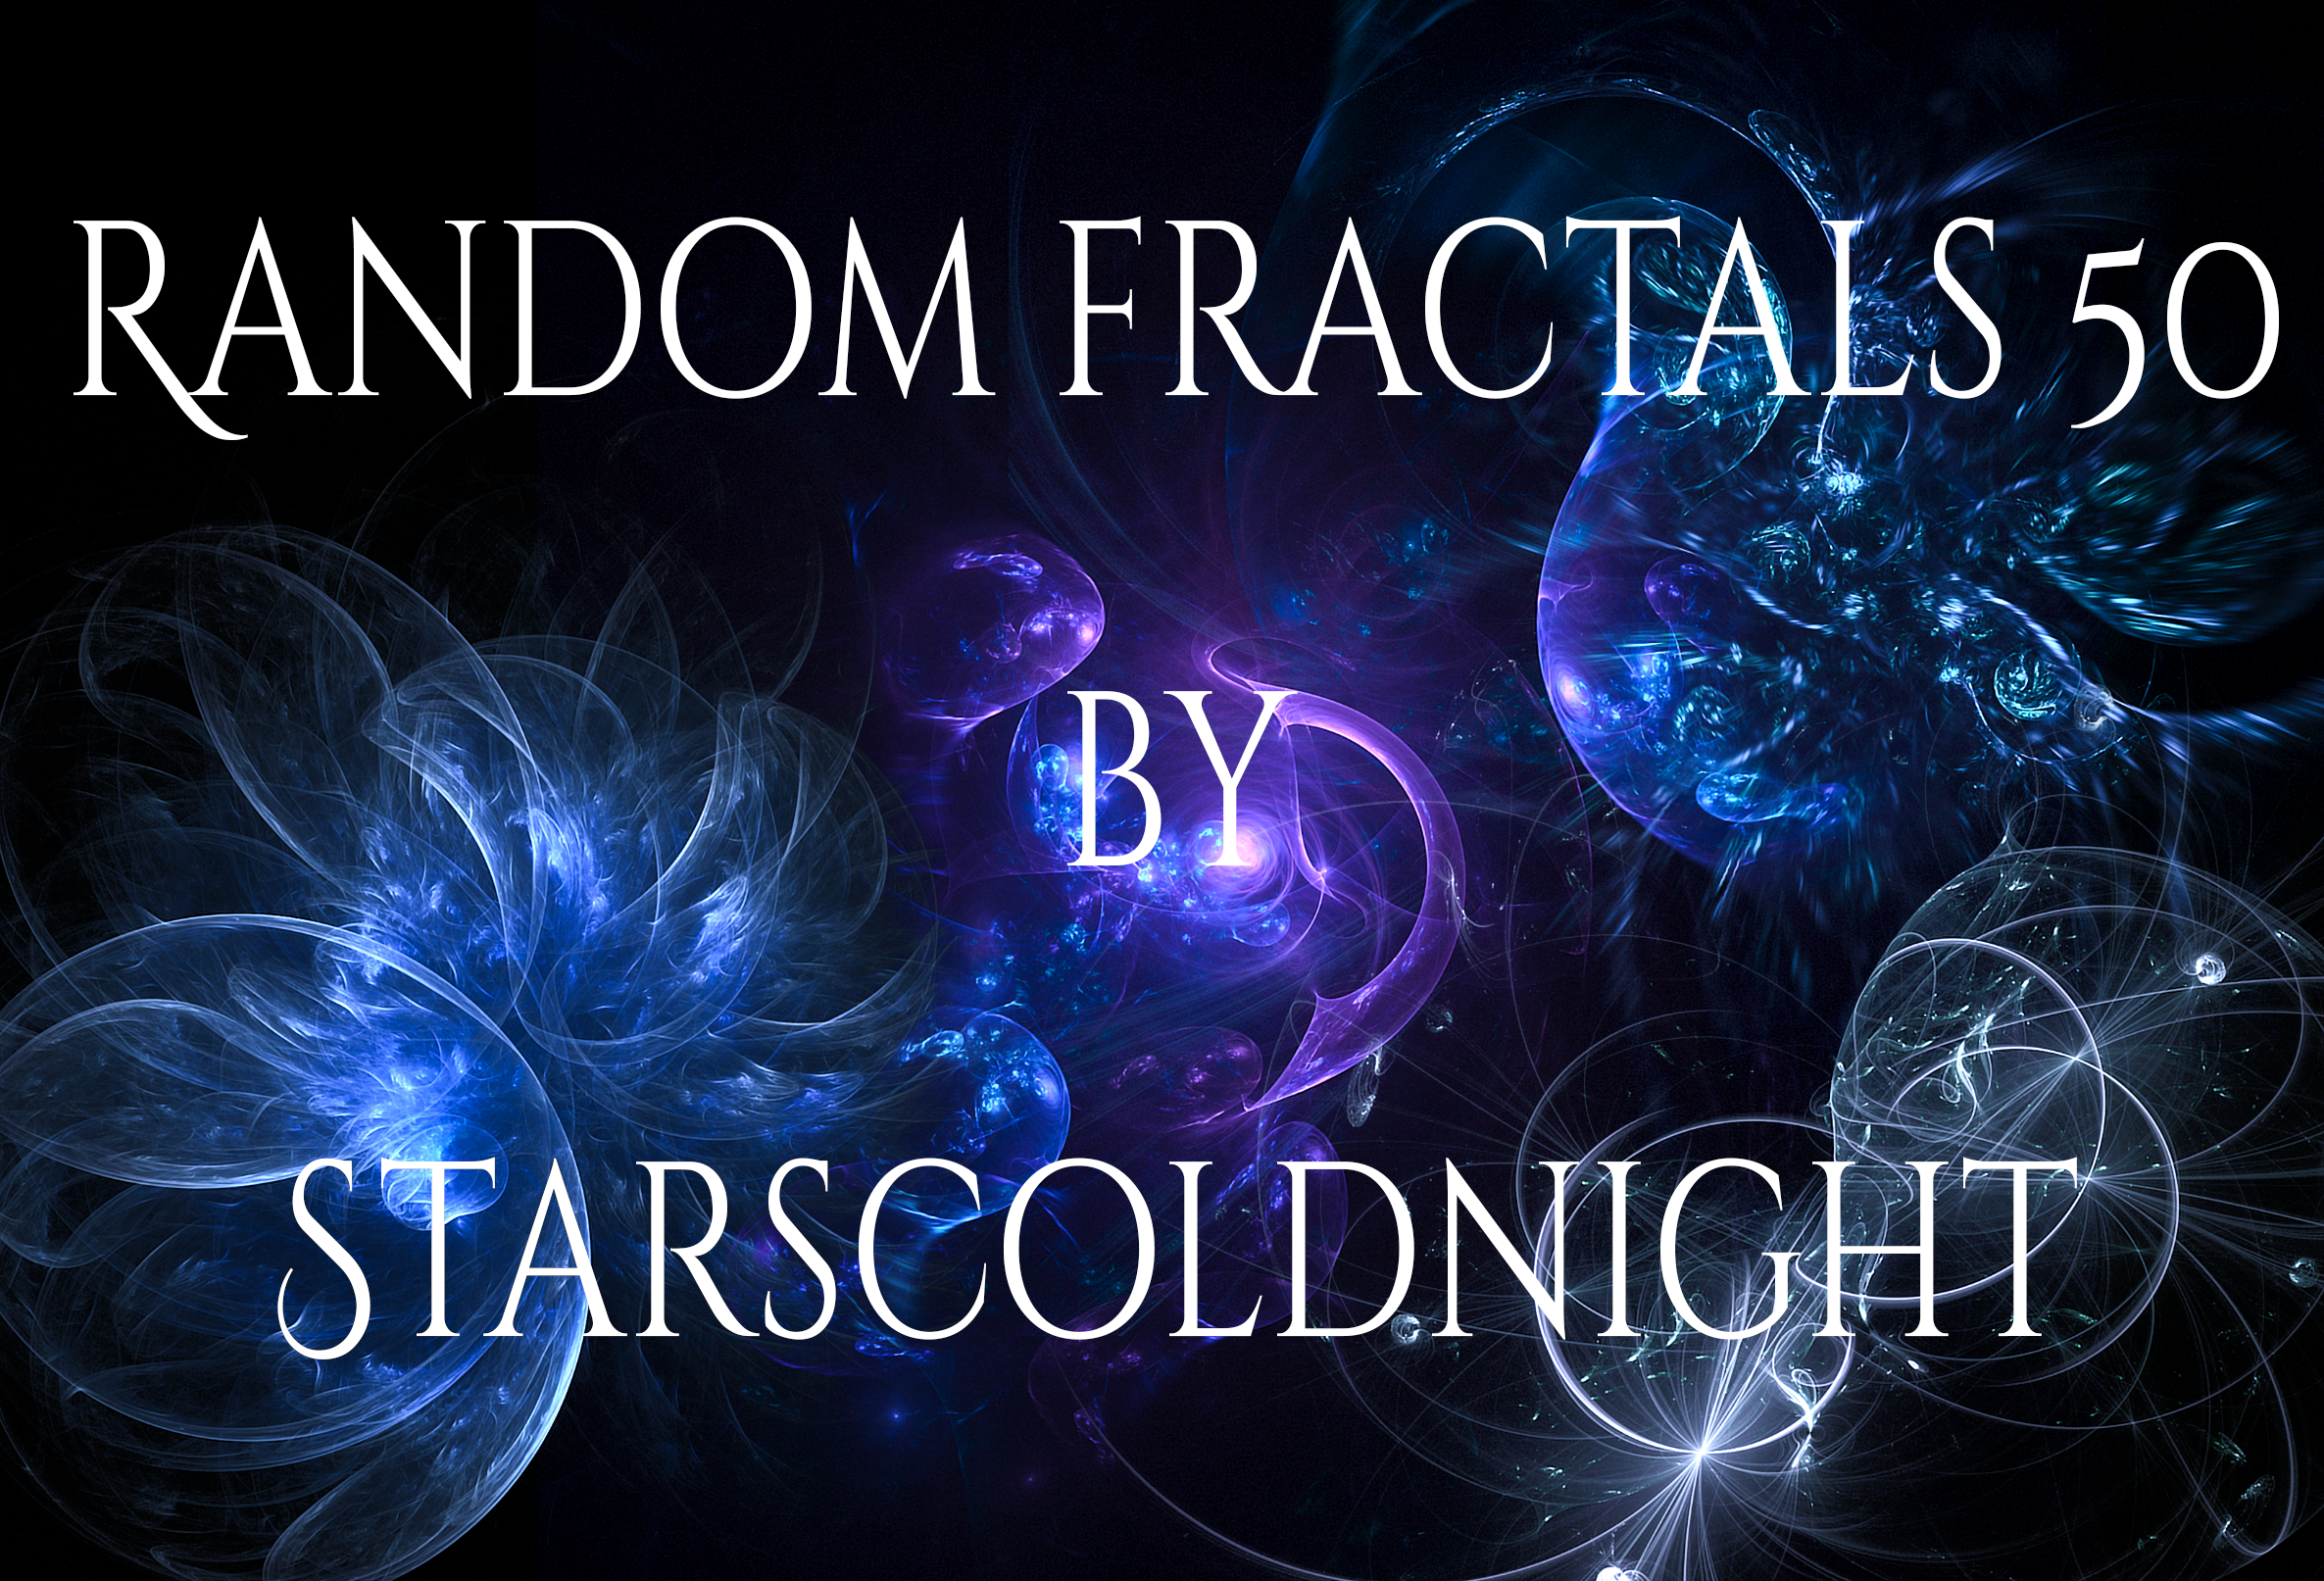 Random fractals 50 by Starscoldnight